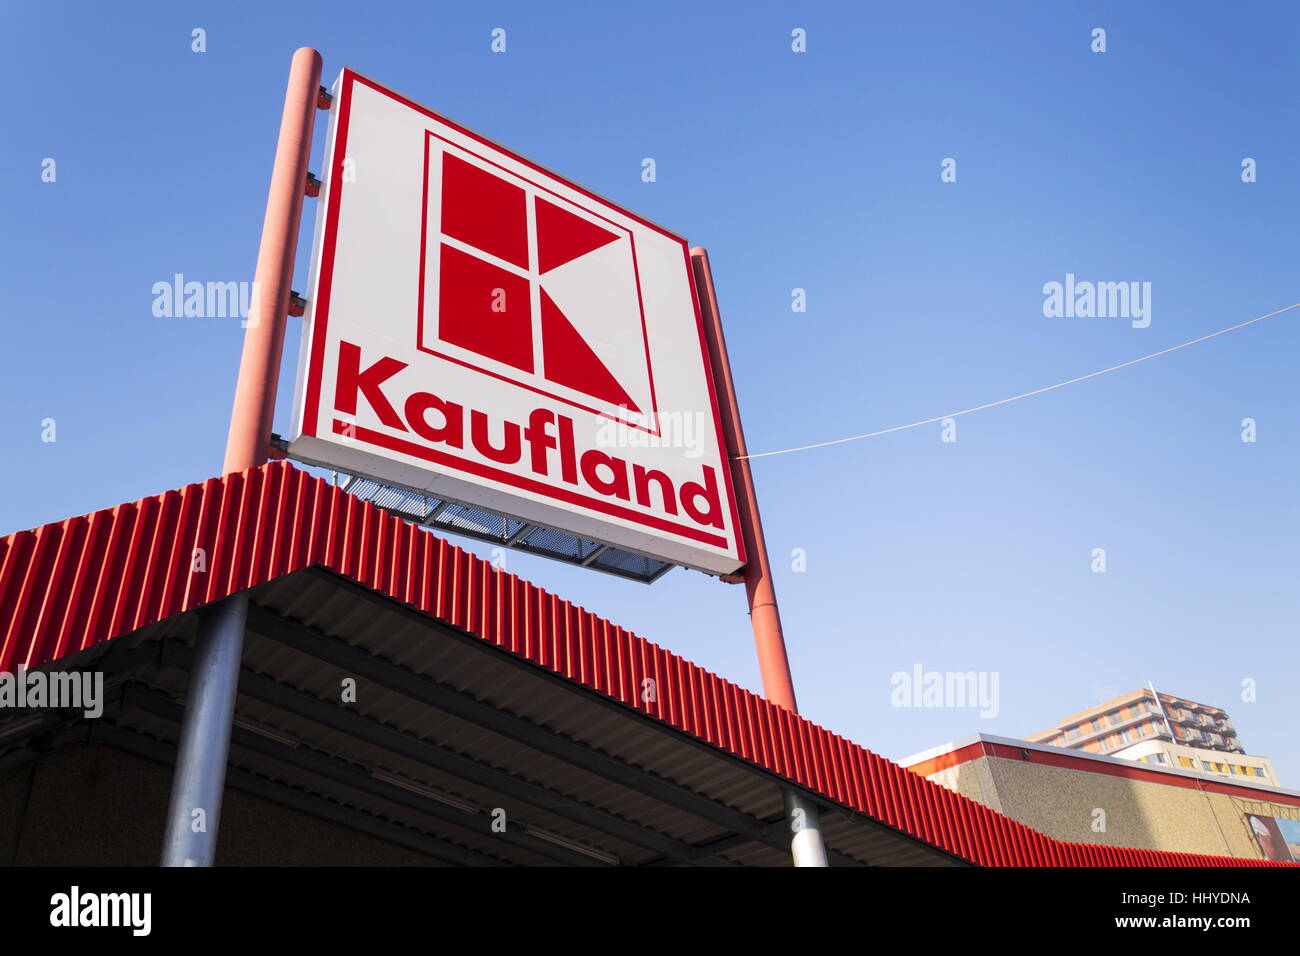 Praga, Repubblica Ceca - 21 gennaio: Kaufland logo su ipermercato dalla catena tedesca, parte di Schwartz Gruppe on gennaio 21, 2017 Foto Stock